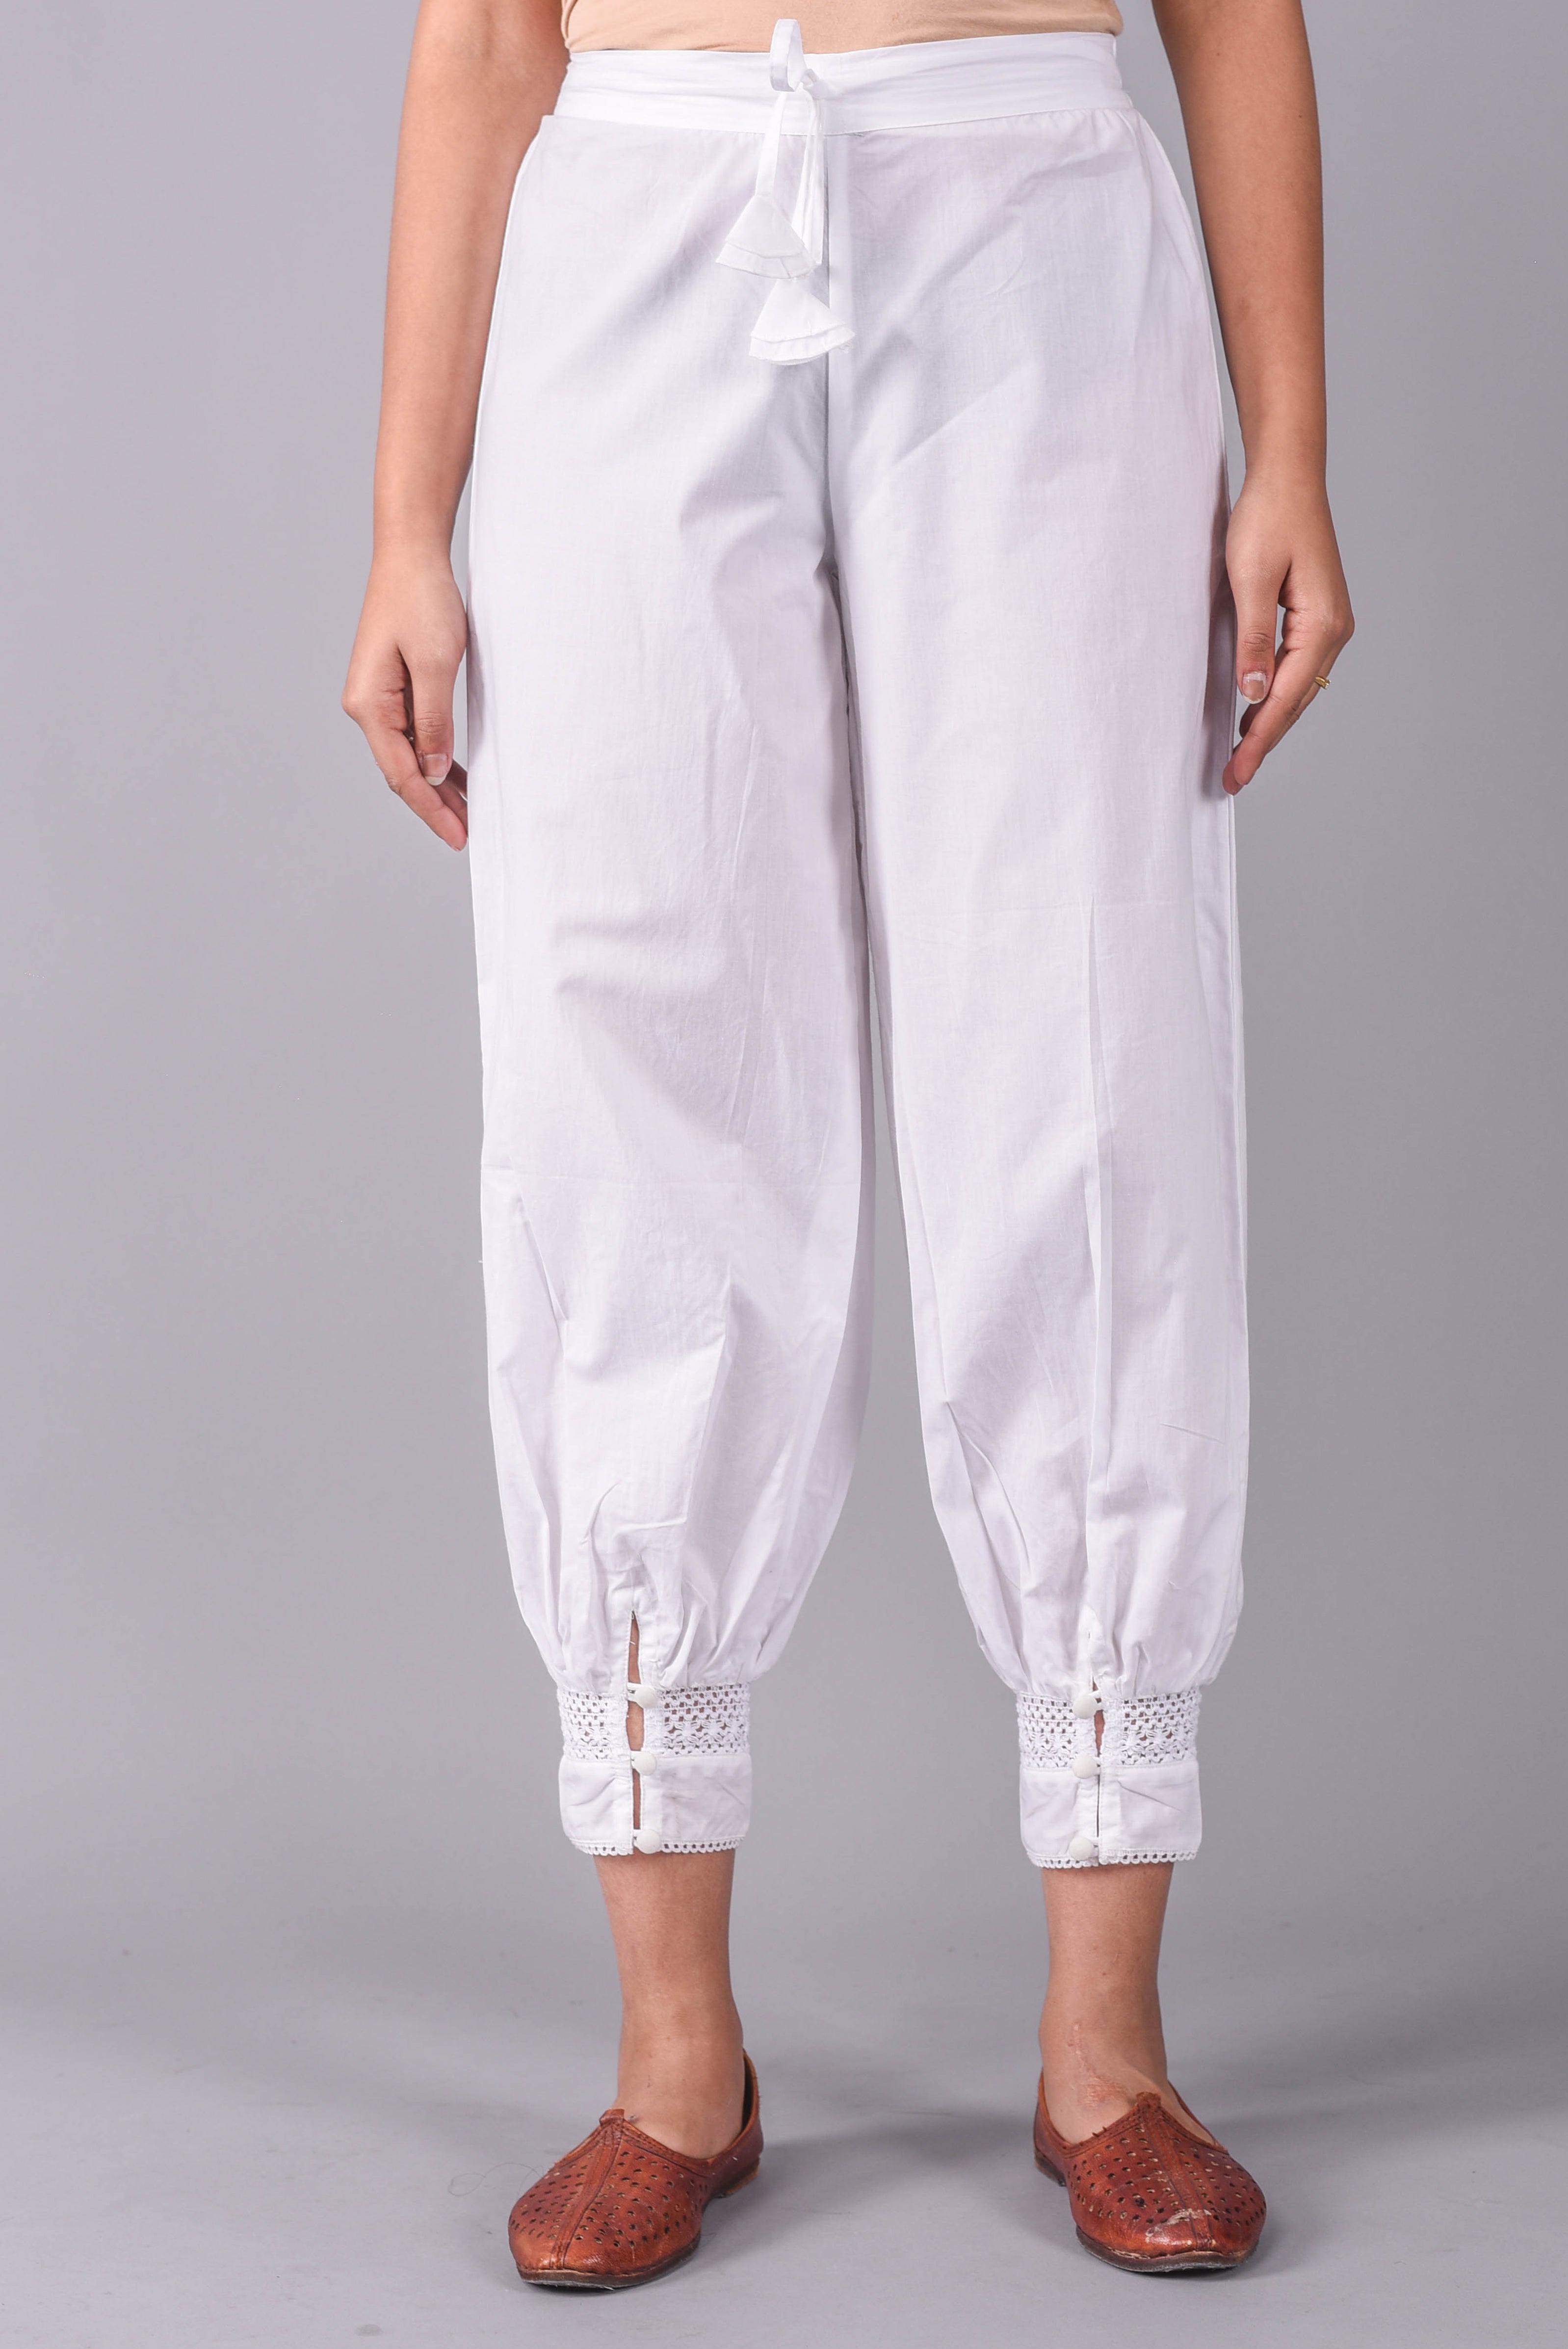 Buy Off-White Turkish Harem Pants by Designer PURVI DOSHI Online at  Ogaan.com